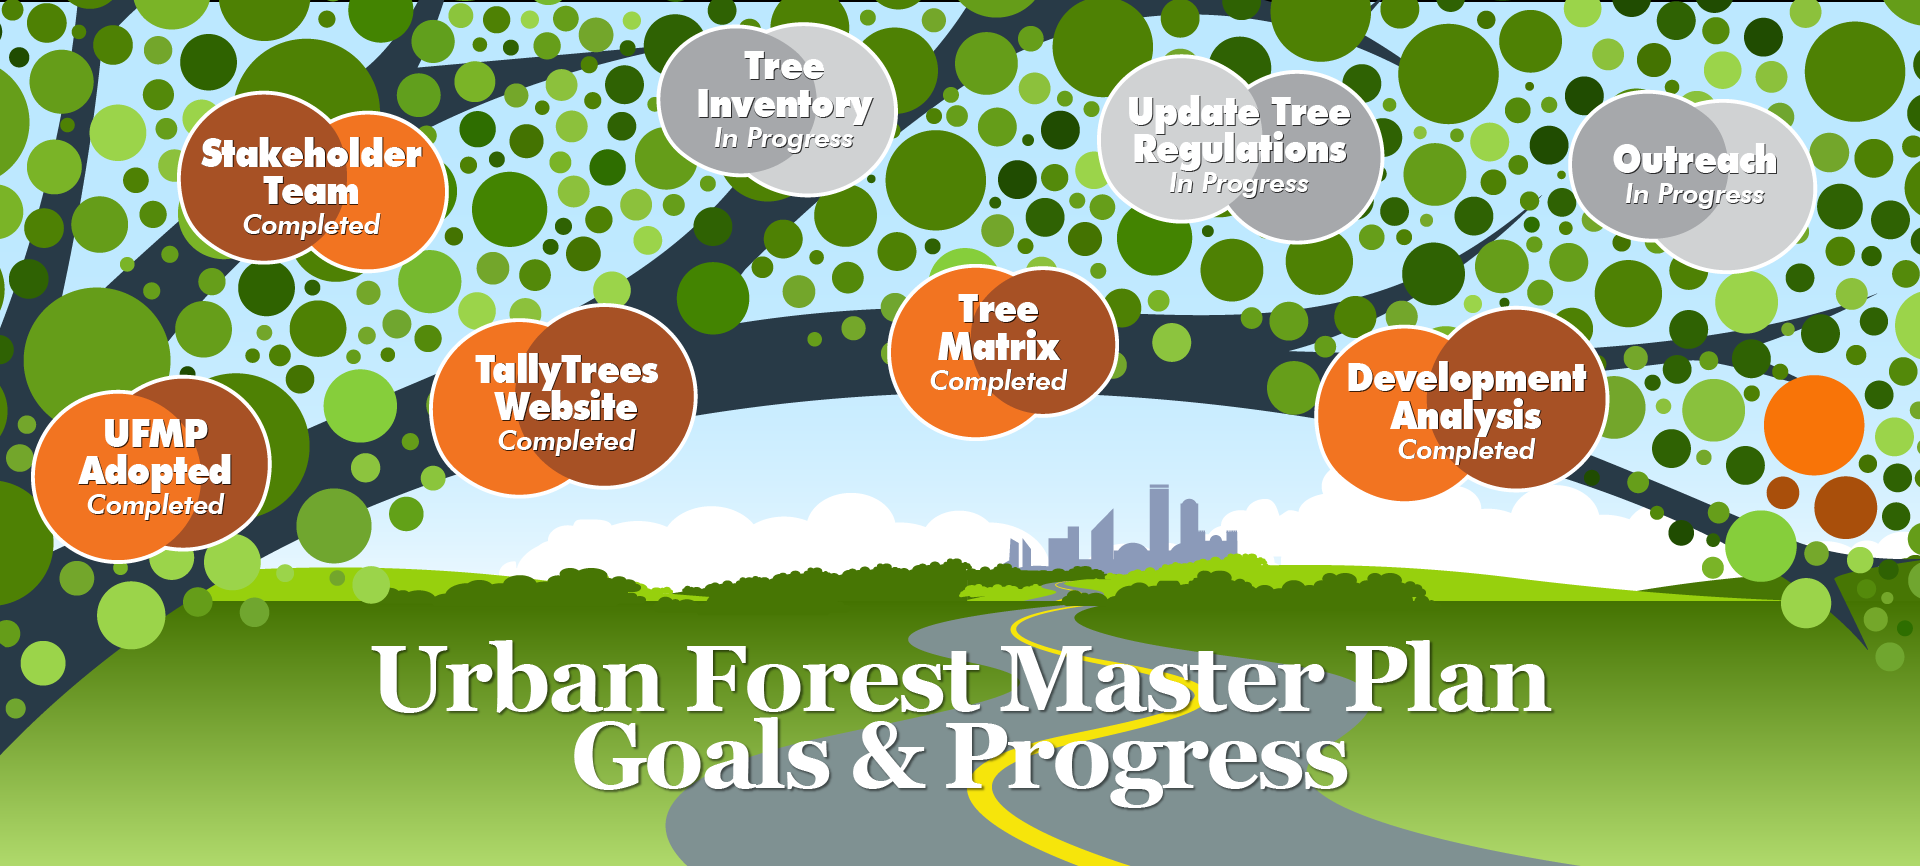 Planning, Urban Forest Master Plan Goals